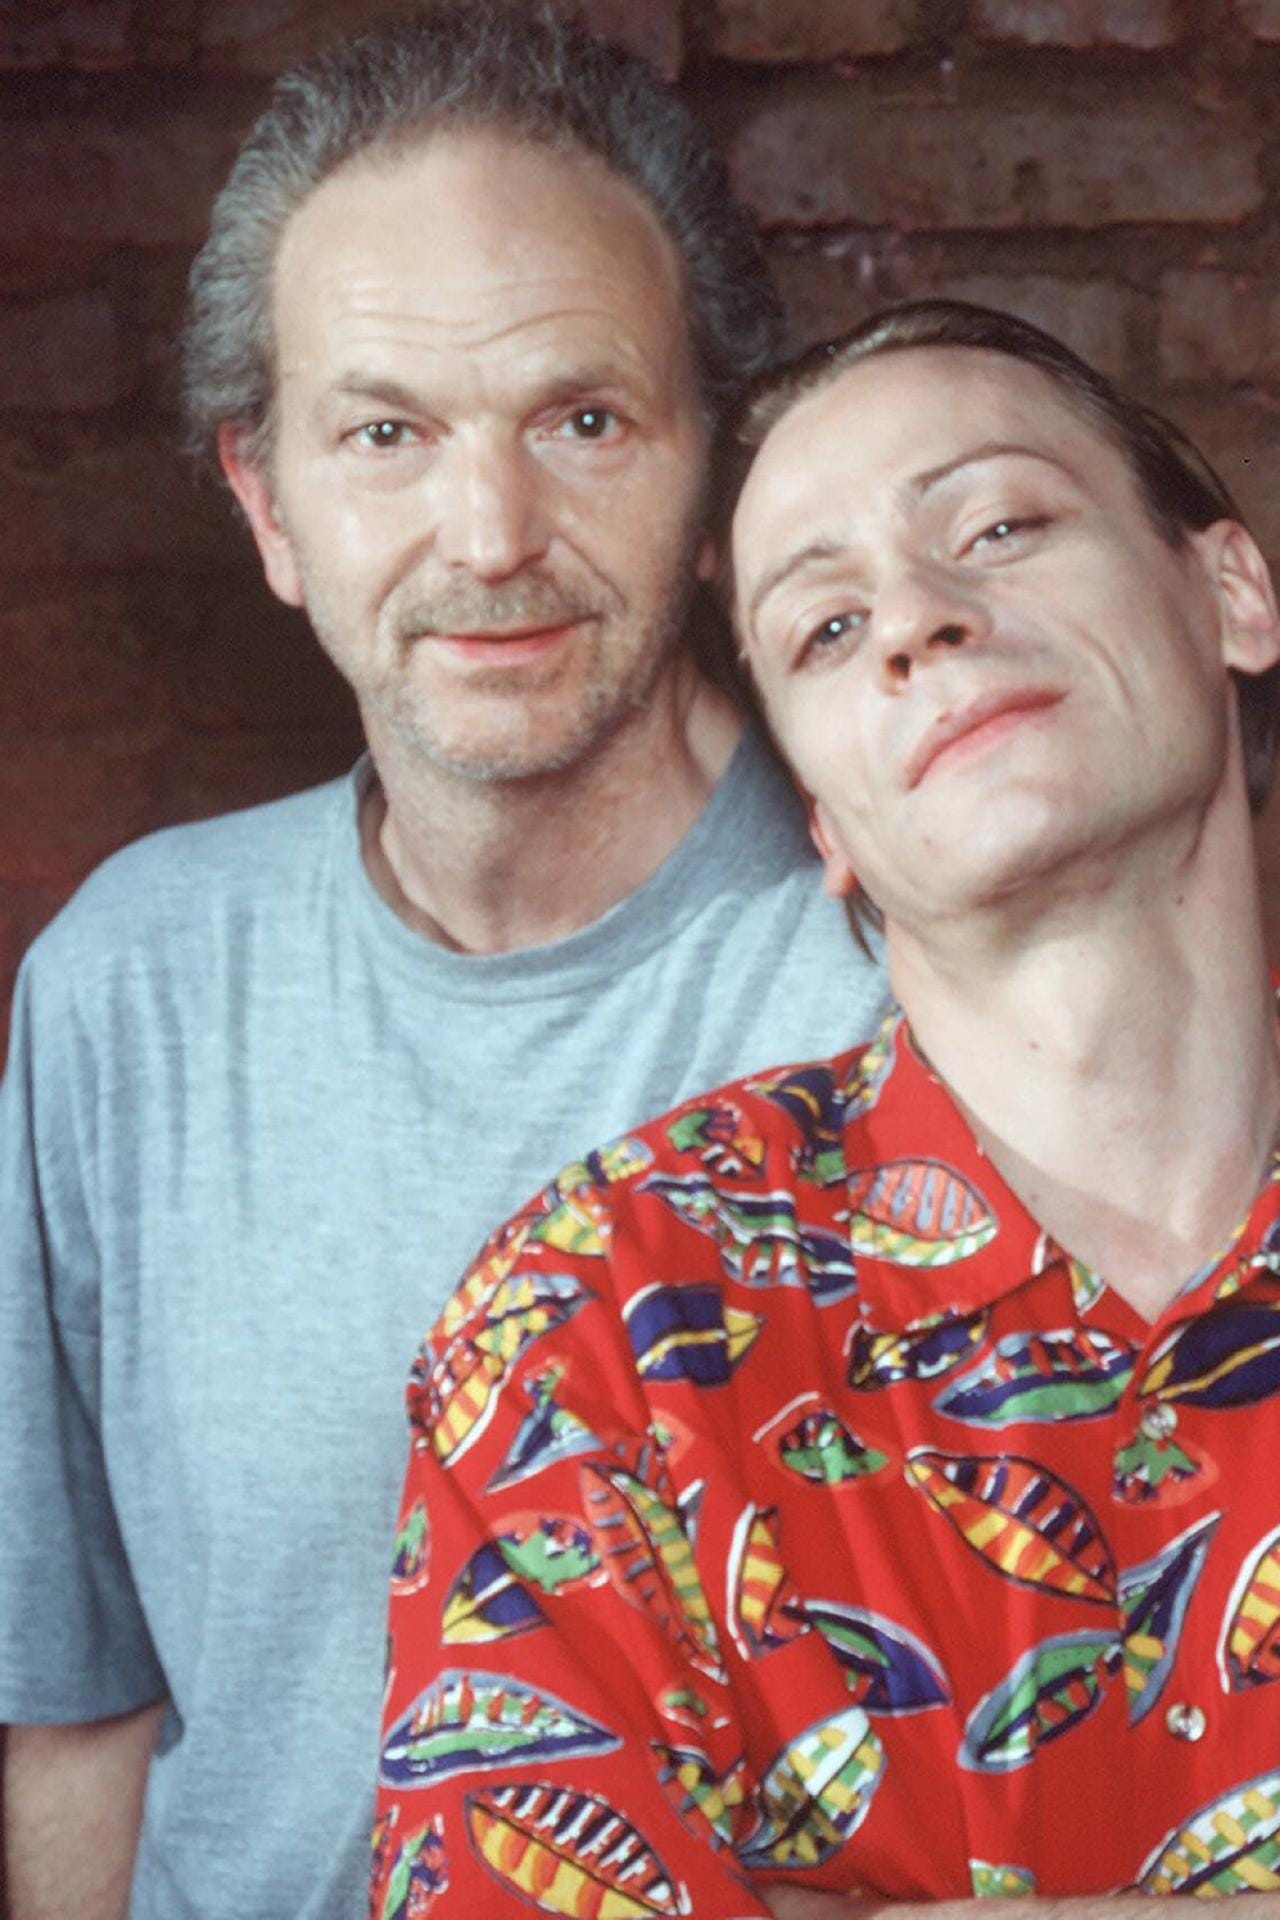 1994 spielte Michael Gwisdek in "Abschied für Agnes" mit.